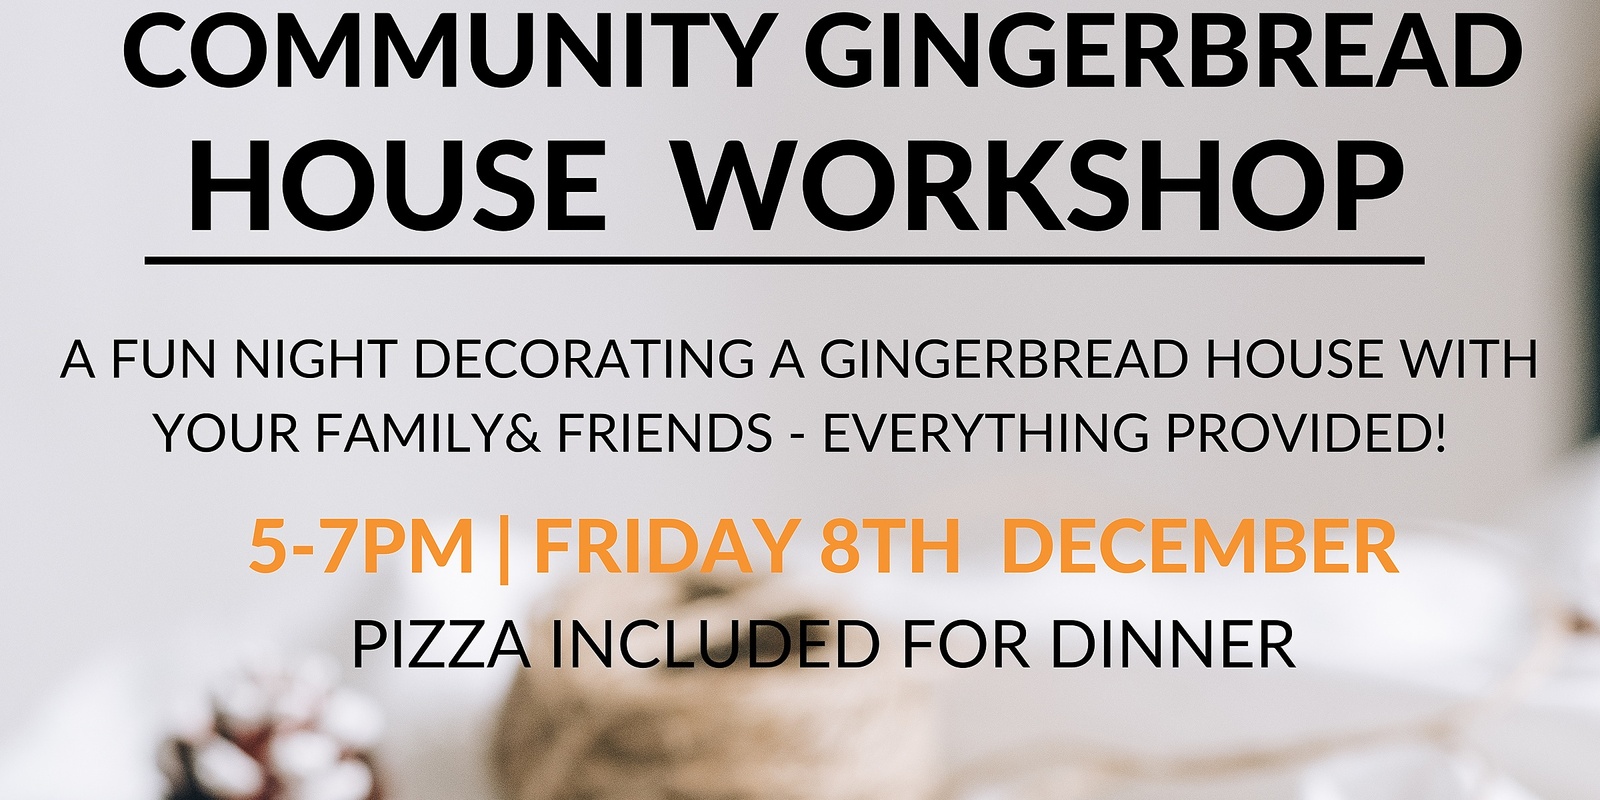 Banner image for Community Gingerbread House Workshop